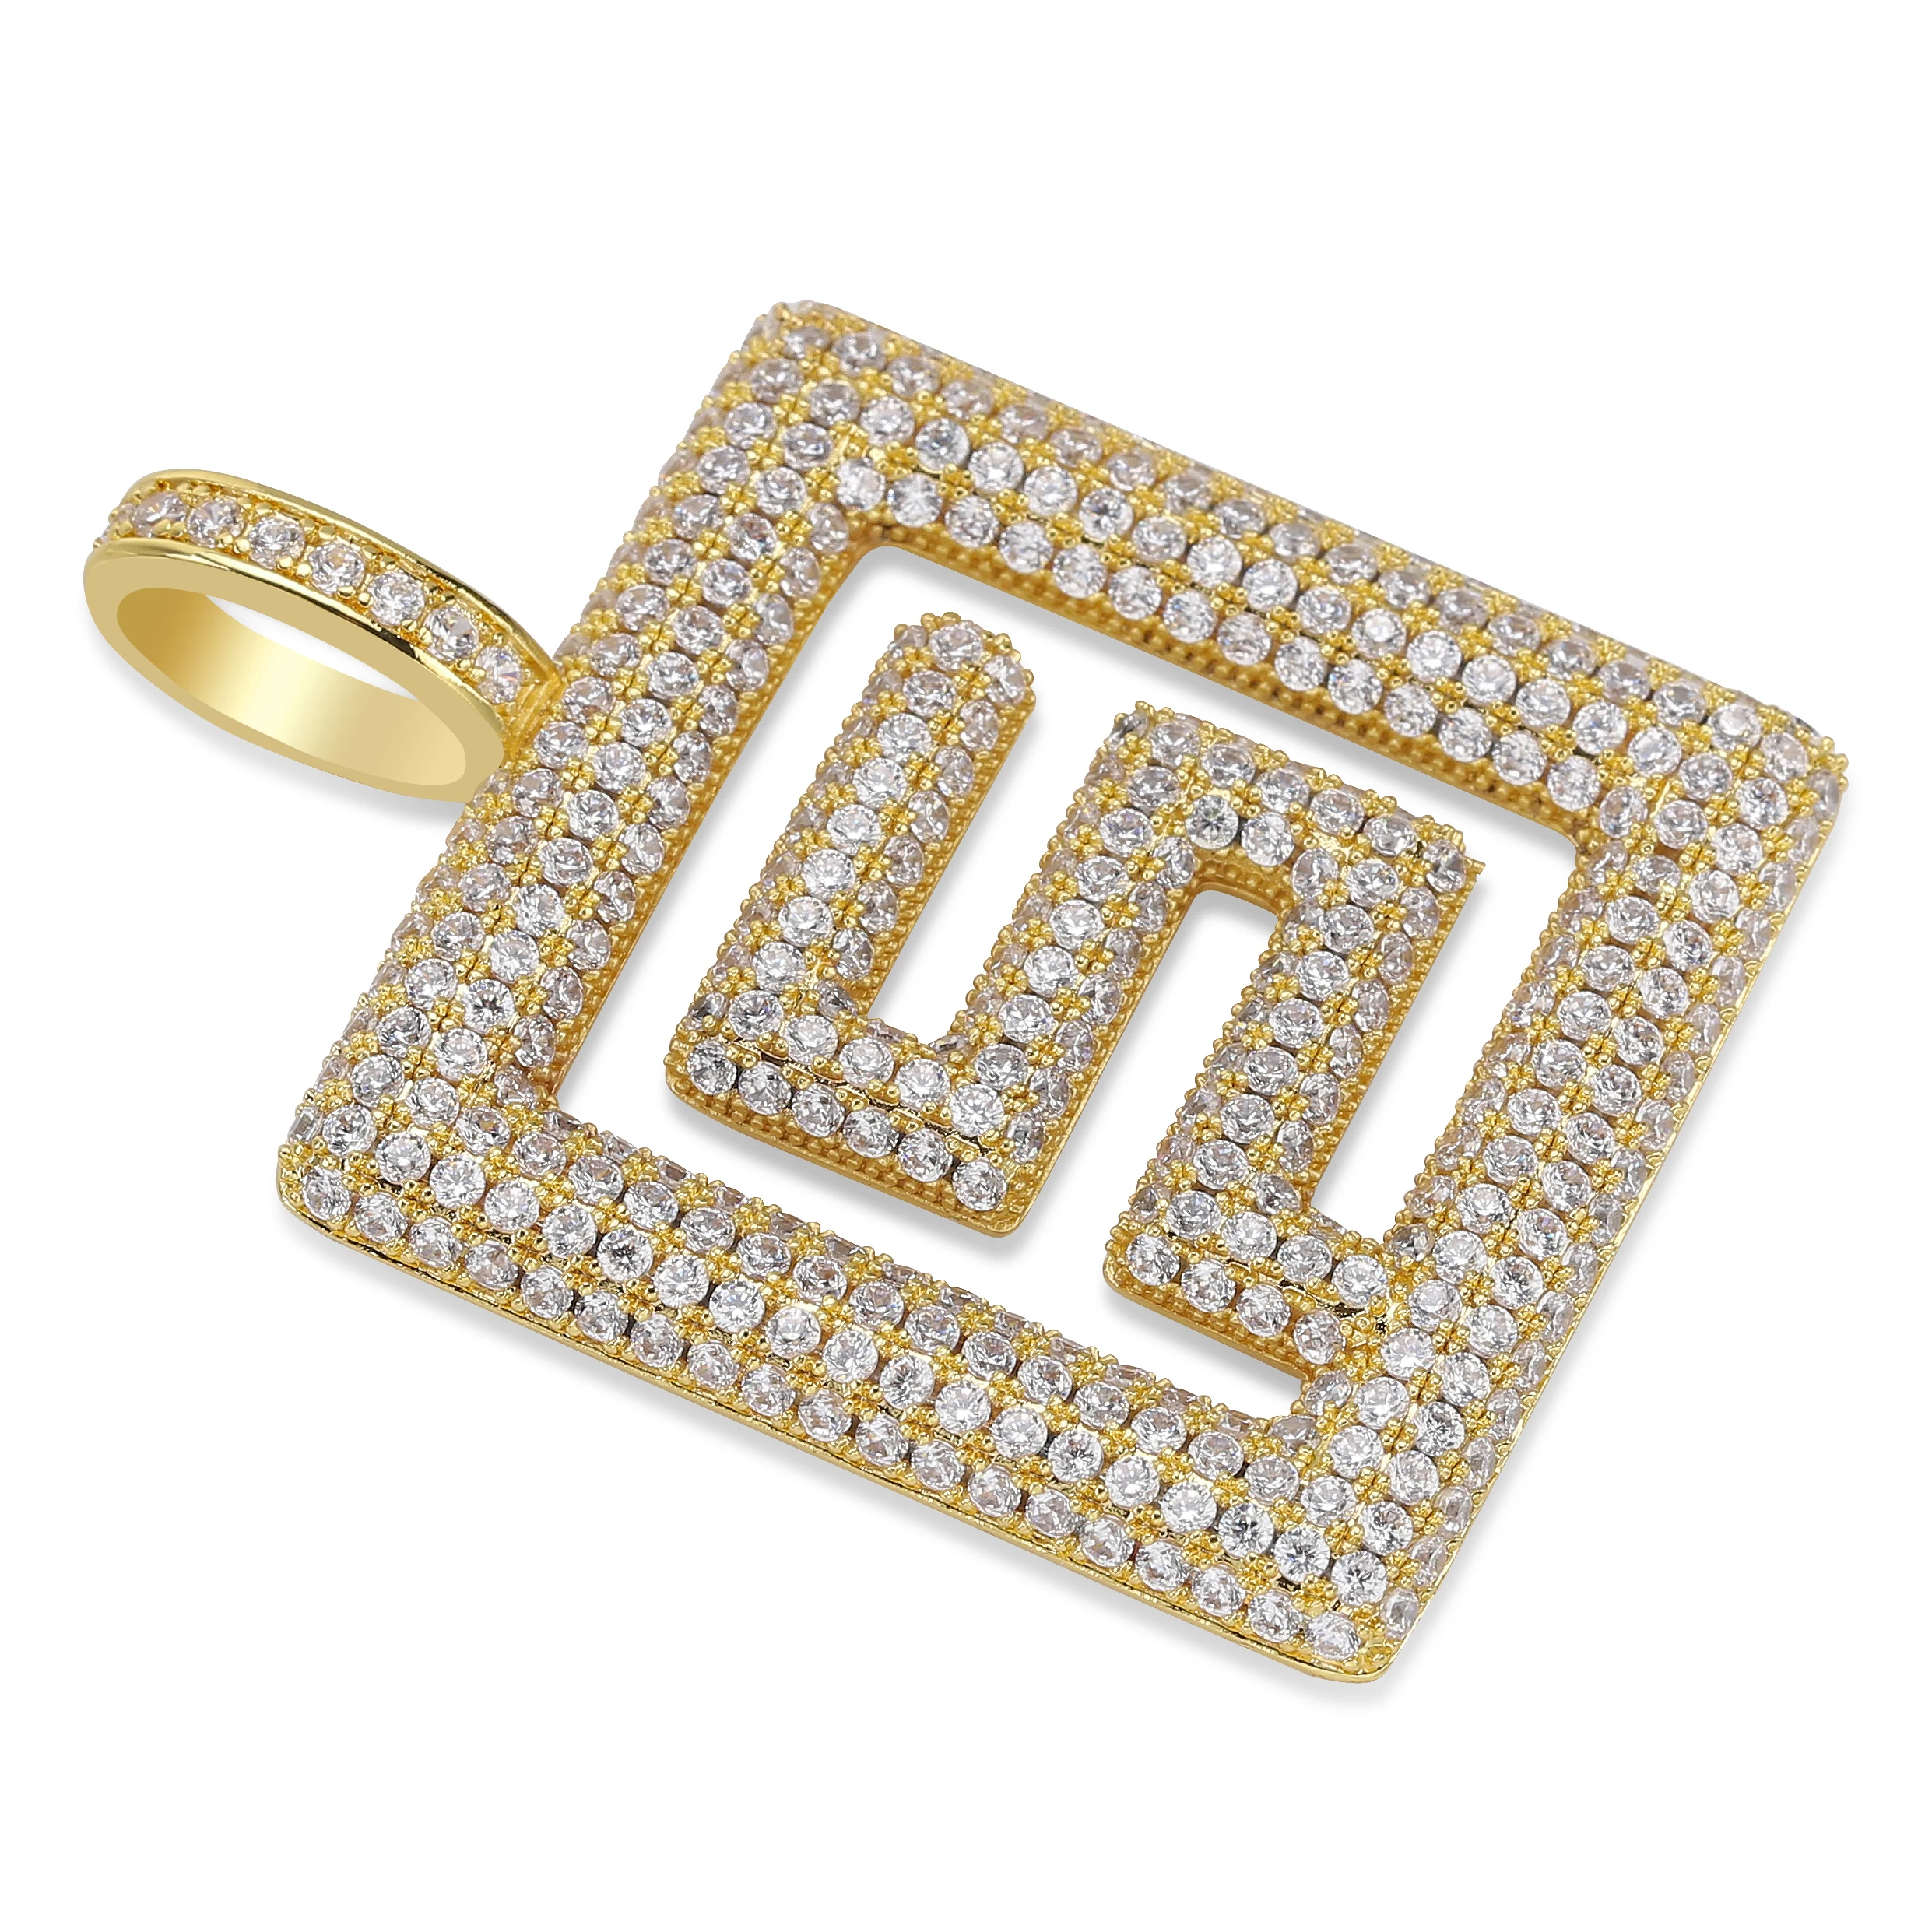 Индивидуальный дизайн однотонная задняя подвеска ожерелье хип хоп Золото Серебро Цвет микро проложили Bling CZ Шарм цепи ювелирные изделия